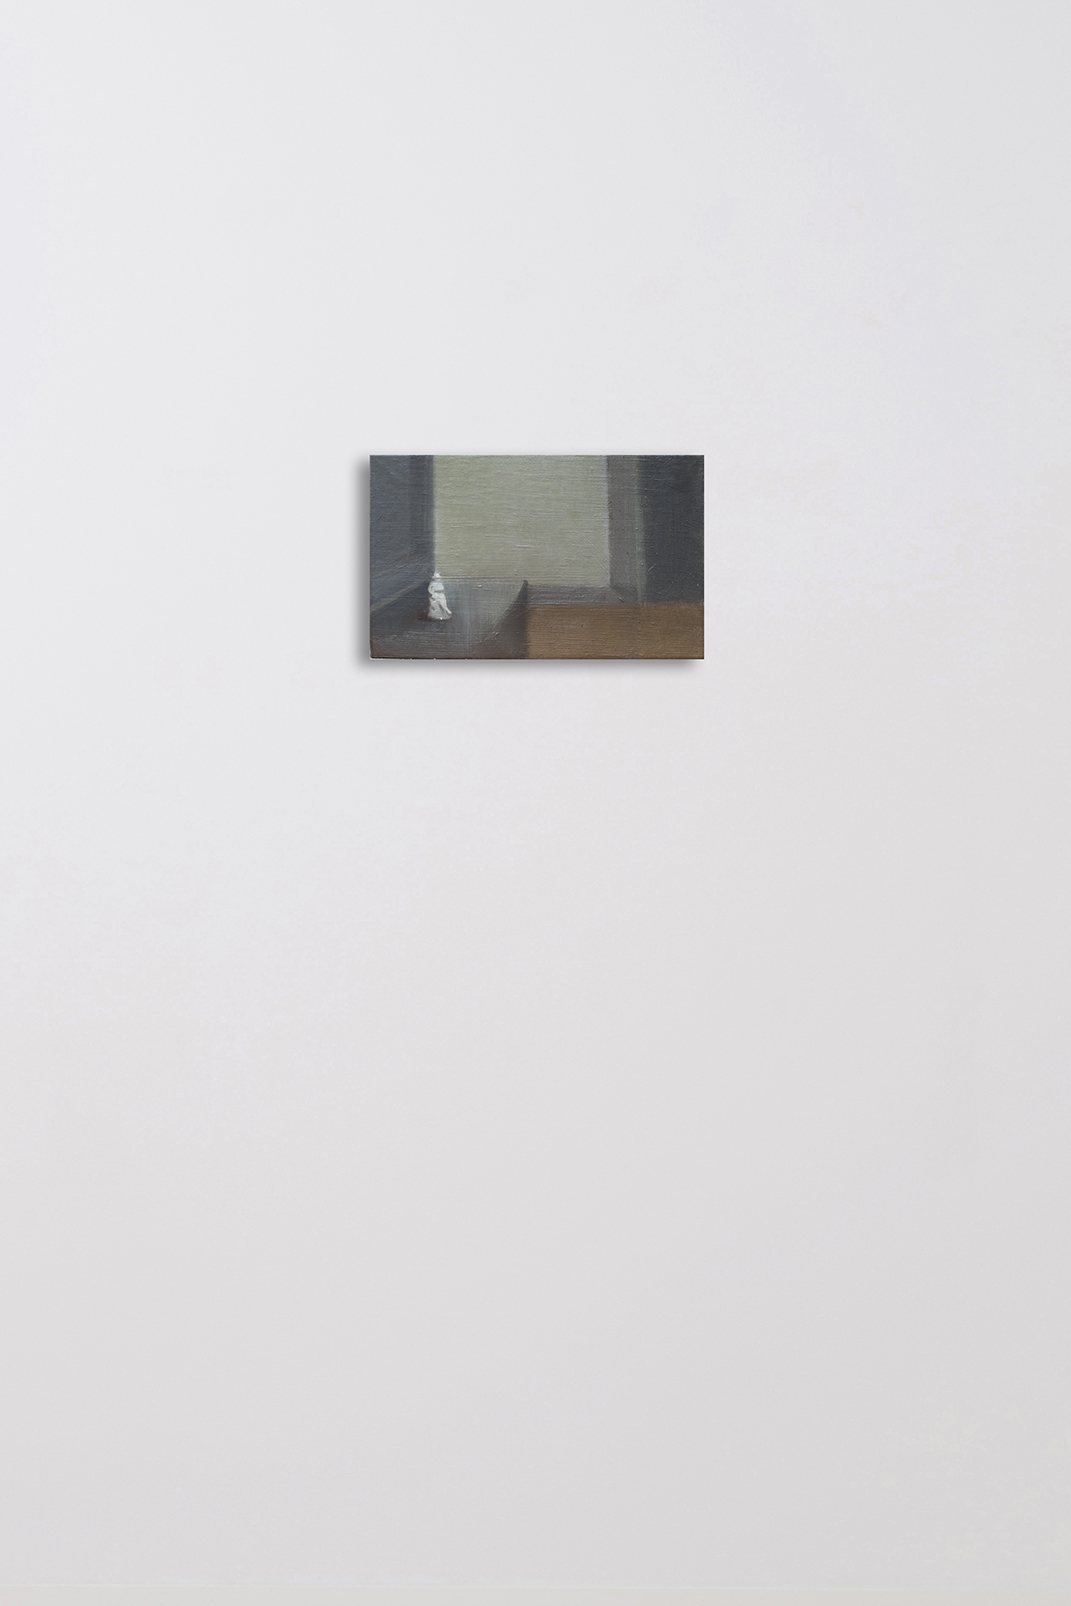 RA Interior con figura 2022 13x19 cm Oil on linen Pigment Gallery Galería de Arte en Barcelona Interior con figura